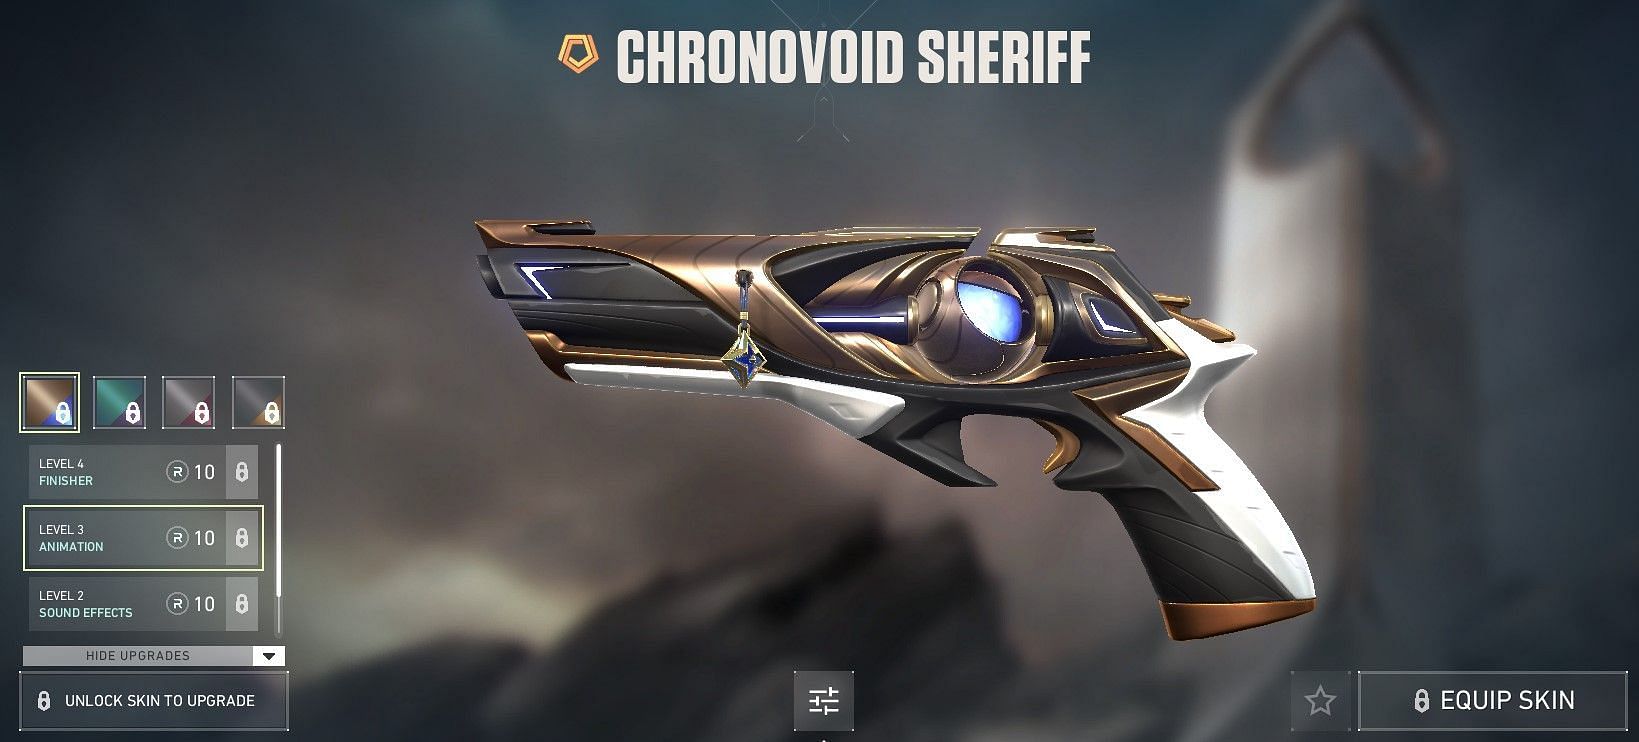 Chronovoid Sheriff (Image via Riot Games)